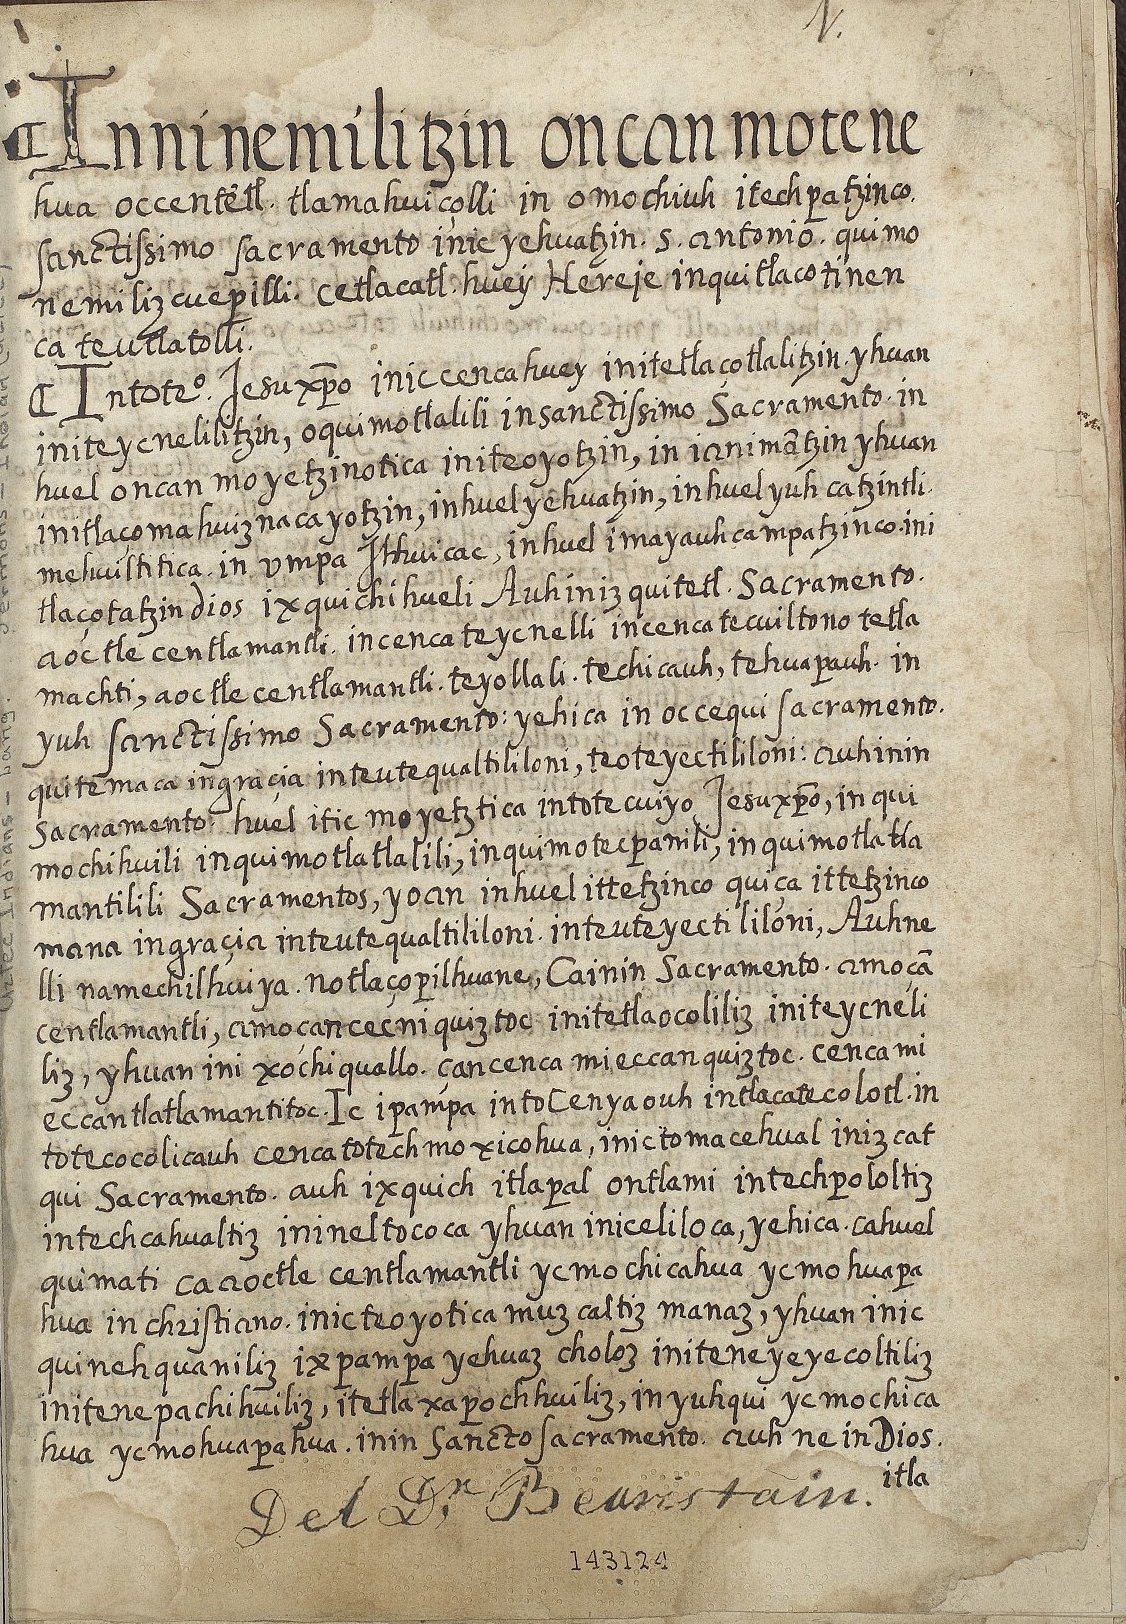 Sermonario la lengua nahuatl (Ms. Coll. 700, item 189), 1r